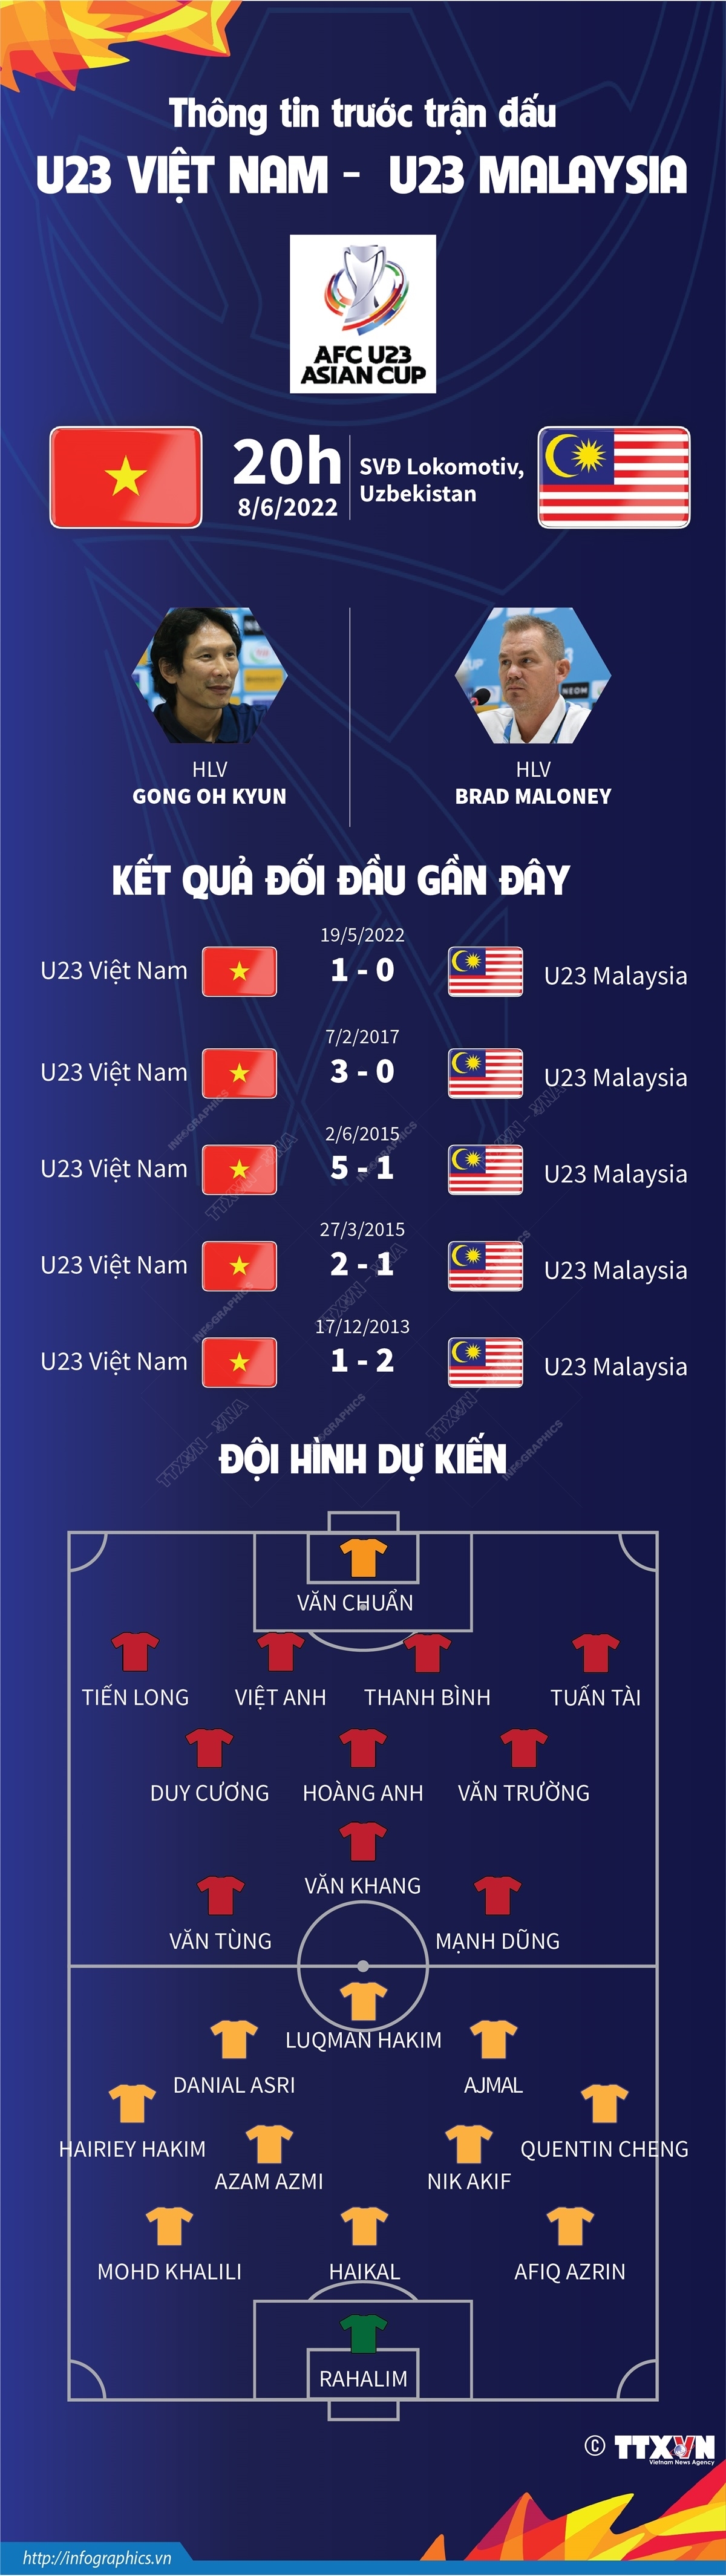 Thông tin trước trận đấu U23 Việt Nam - U23 Malaysia